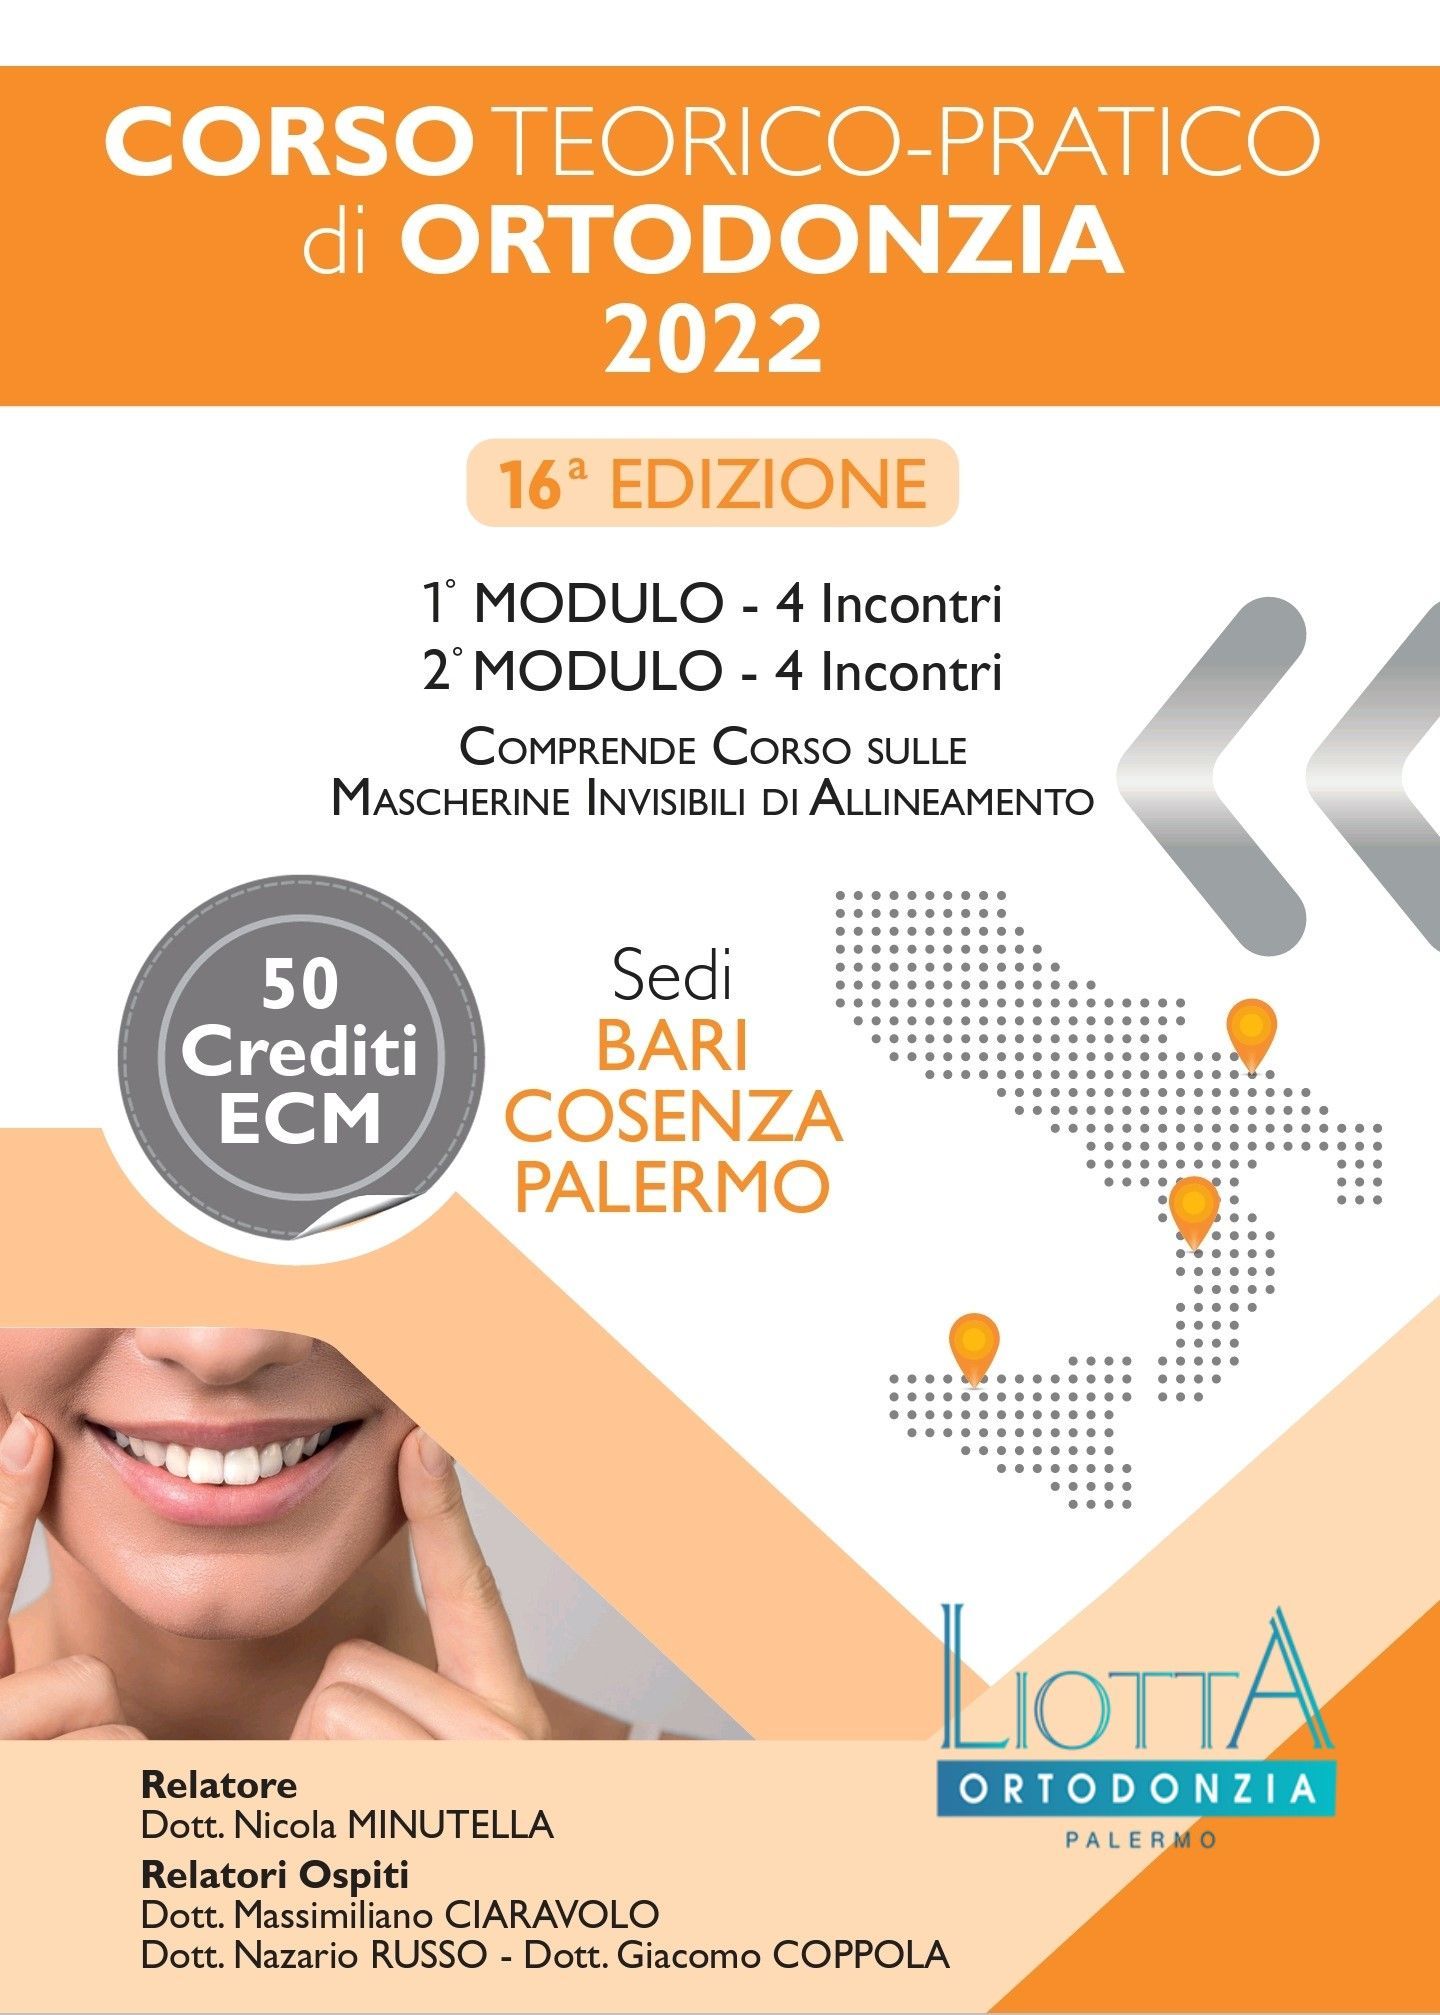 Corso Teorico-Pratico di ortodonzia 2022, Laboratorio ortodontico Liotta Palermo